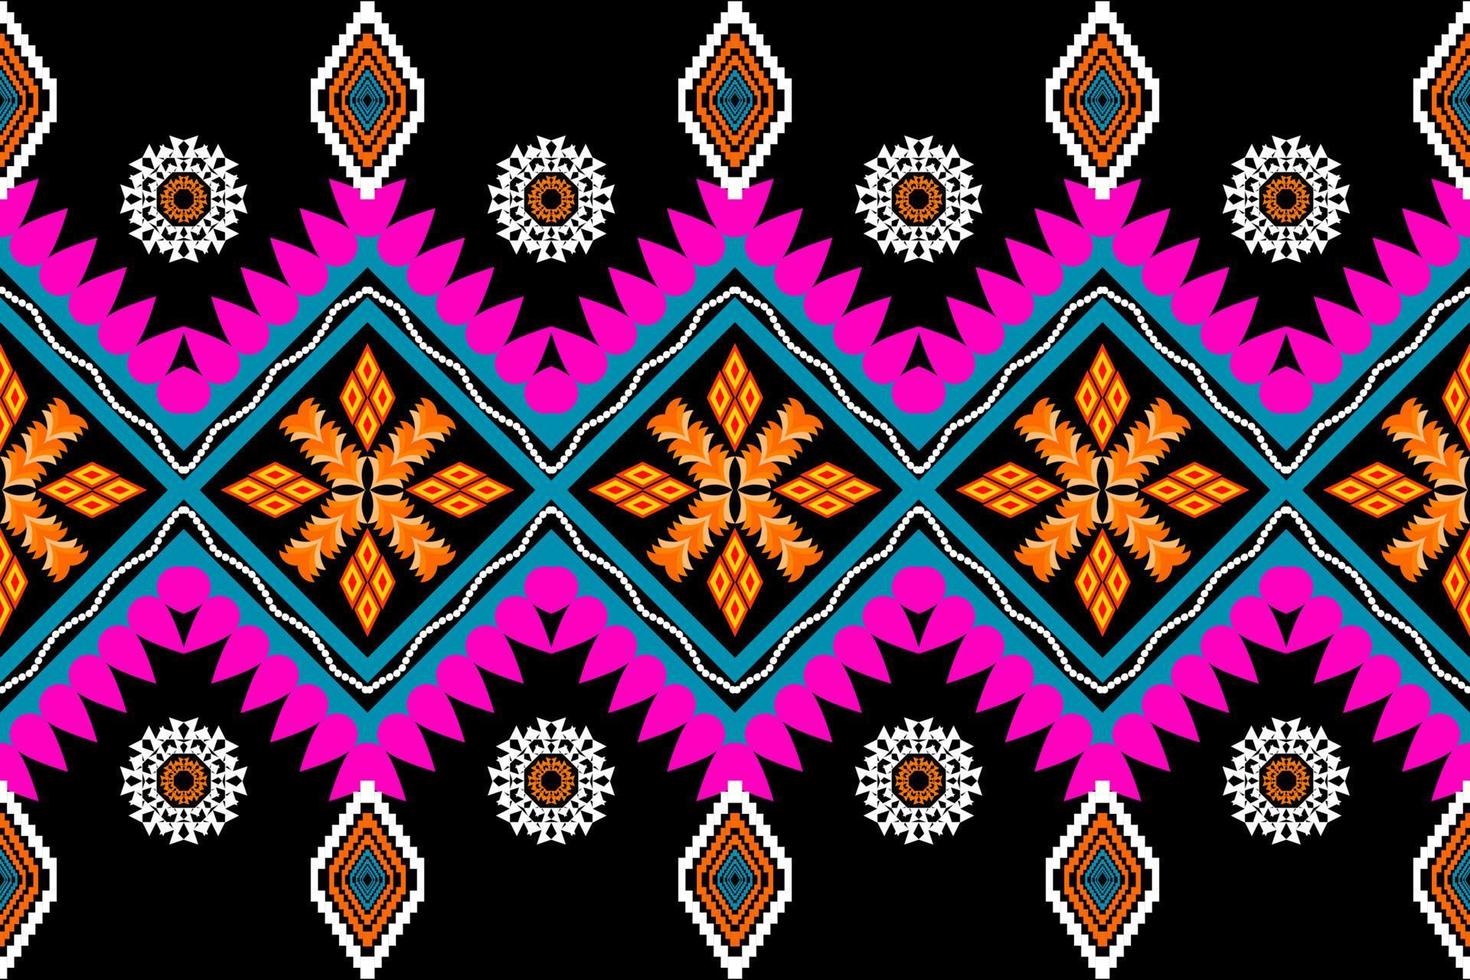 belle broderie.motif oriental ethnique géométrique style traditionnel .aztec, abstrait, vecteur, illustration.design pour la texture, le tissu, les vêtements, l'emballage, la mode, le tapis, l'impression. vecteur